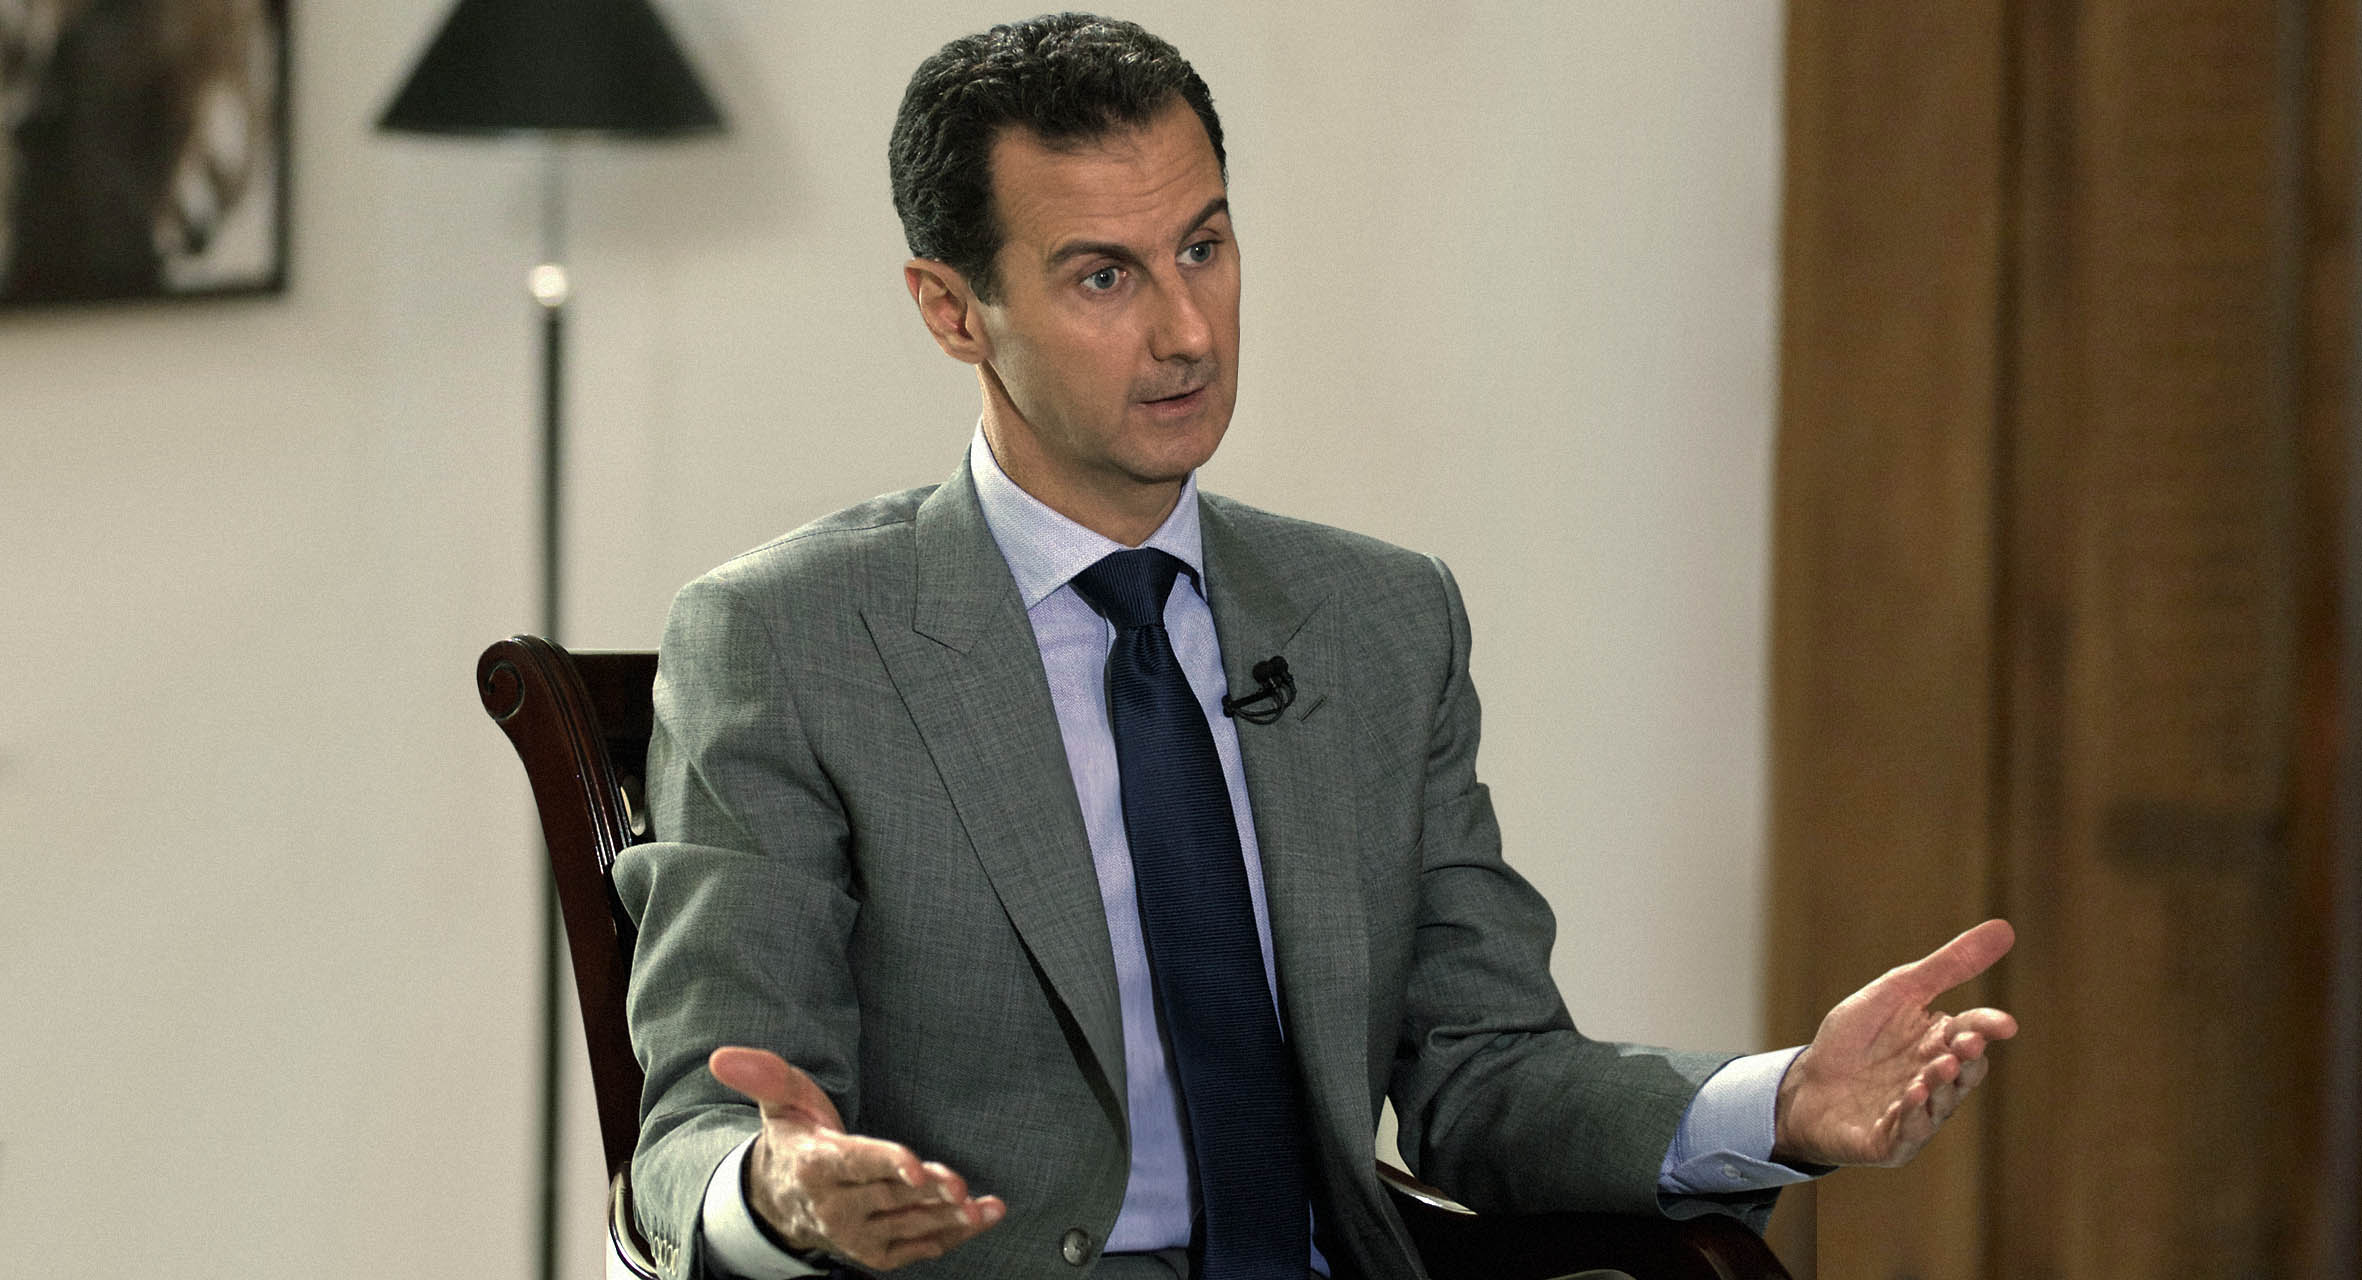 صورة الأسد يدعو لوقف تداول أخبار الليرة حتى لا يشعر الشعب بالفقر